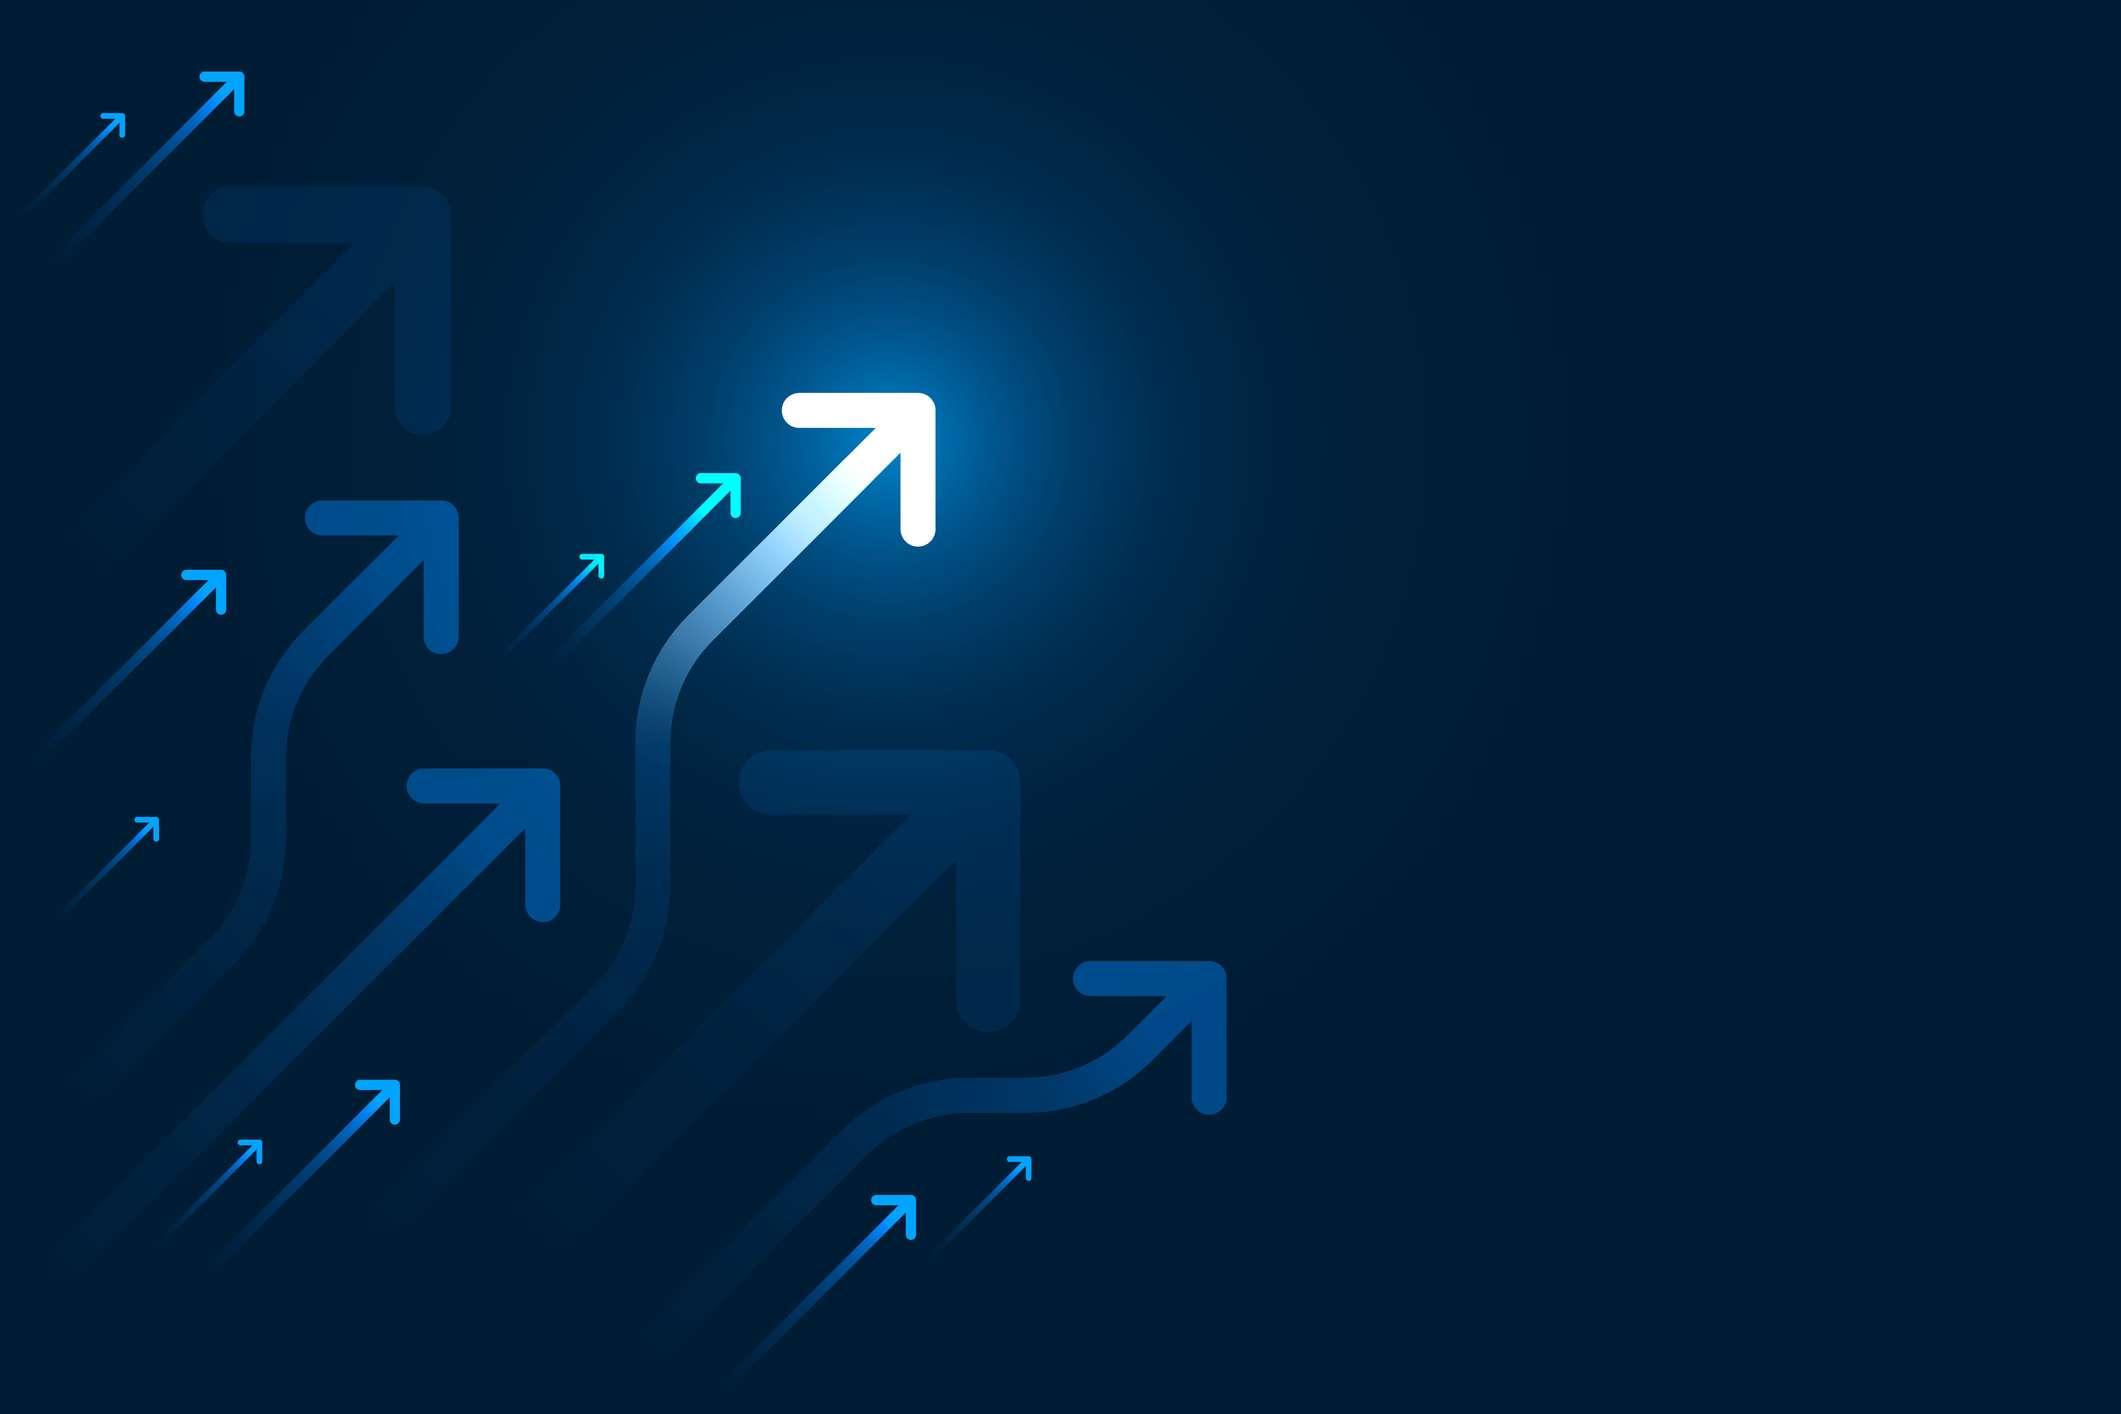 Lichtpfeilschaltung auf blauer Hintergrundillustration, Kopienraumzusammensetzung, Geschäftswachstumskonzept.